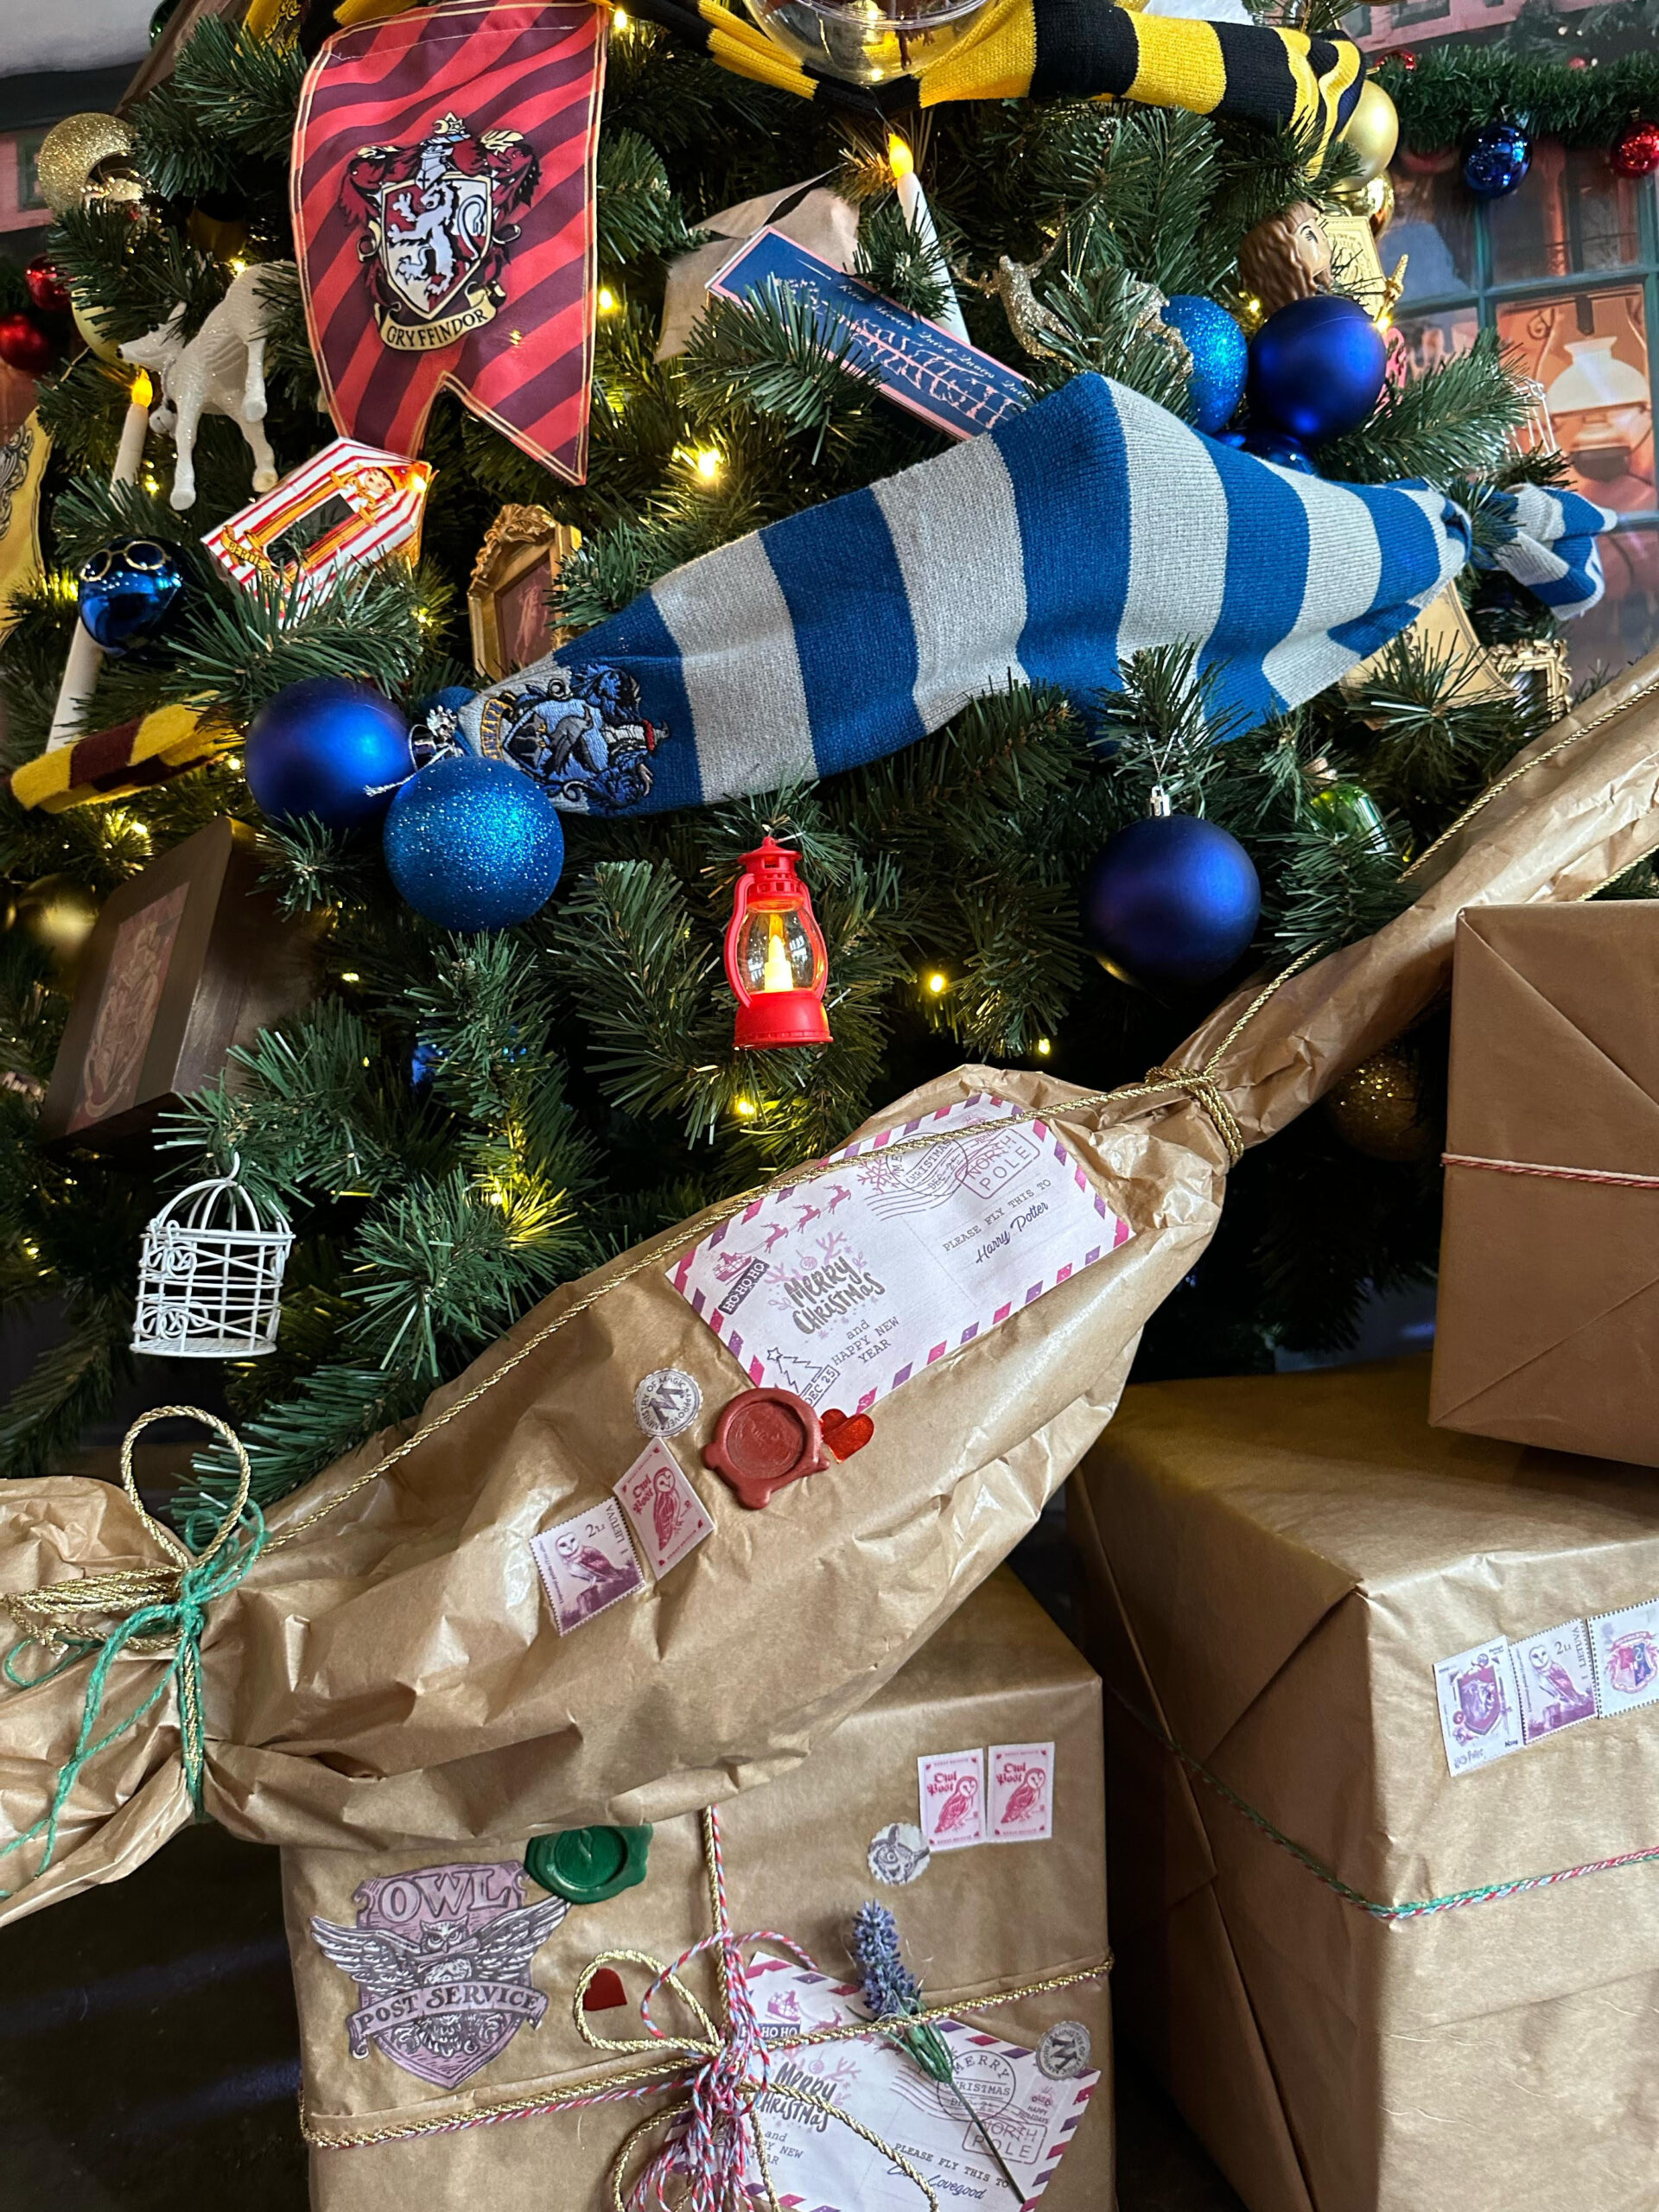 Happy Christmas, Harry! O Chelsea está com uma árvore de Natal inspirada em Harry Potter. Afinal, a época mais mágica do ano